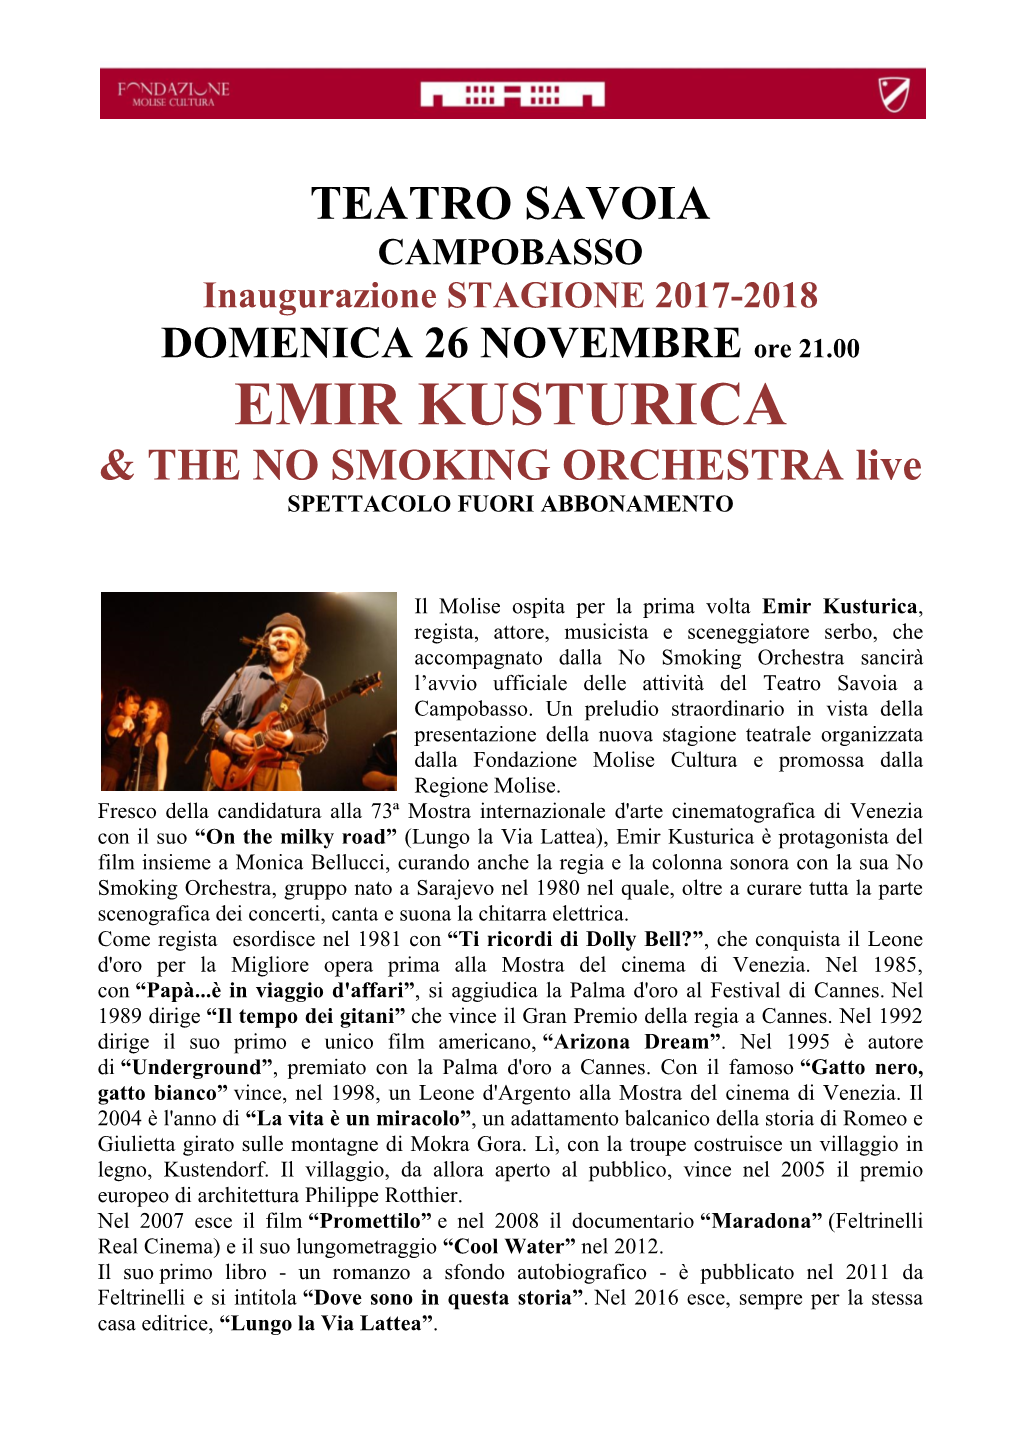 EMIR KUSTURICA & the NO SMOKING ORCHESTRA Live SPETTACOLO FUORI ABBONAMENTO